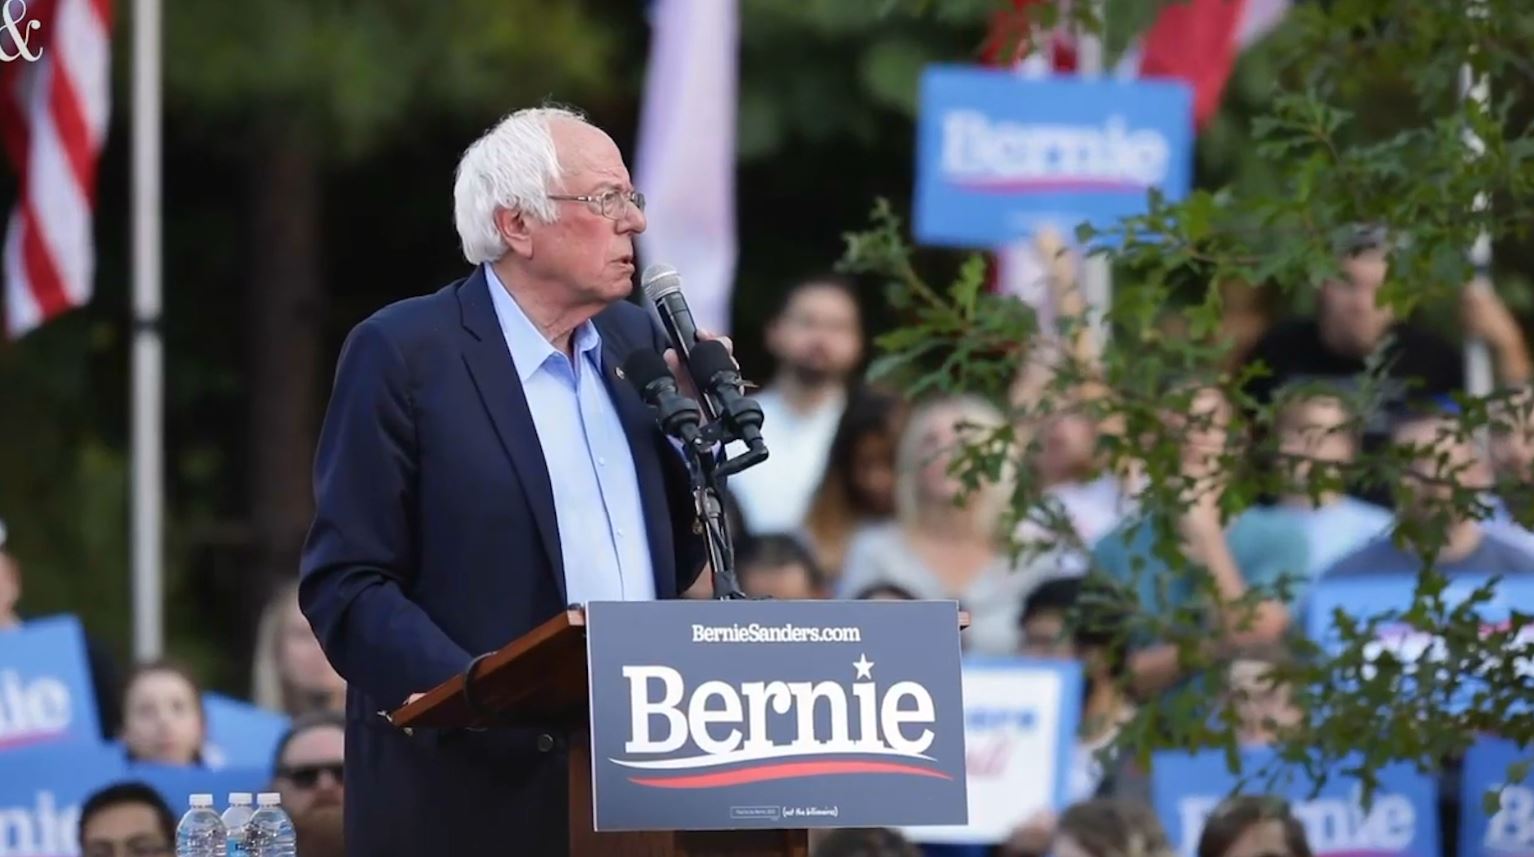 SHBA, kandidati demokrat për president Sanders ndërpret fushatën